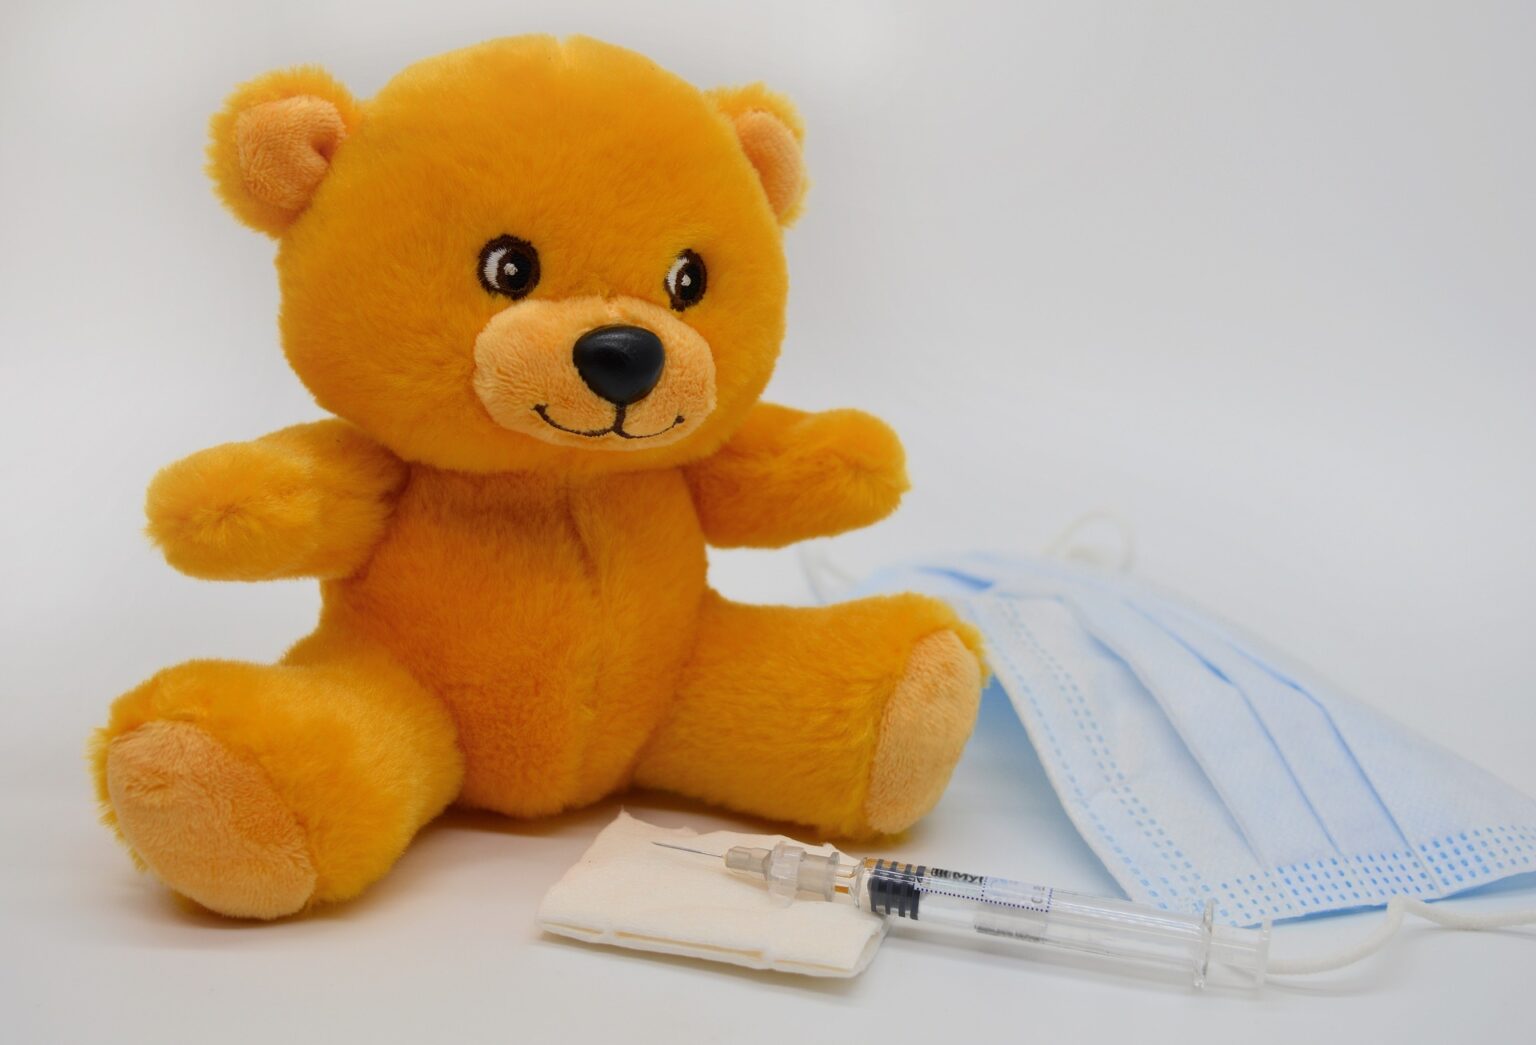 Чи потрібно вакцинувати дітей проти грипу, – роз’яснення МОЗ України